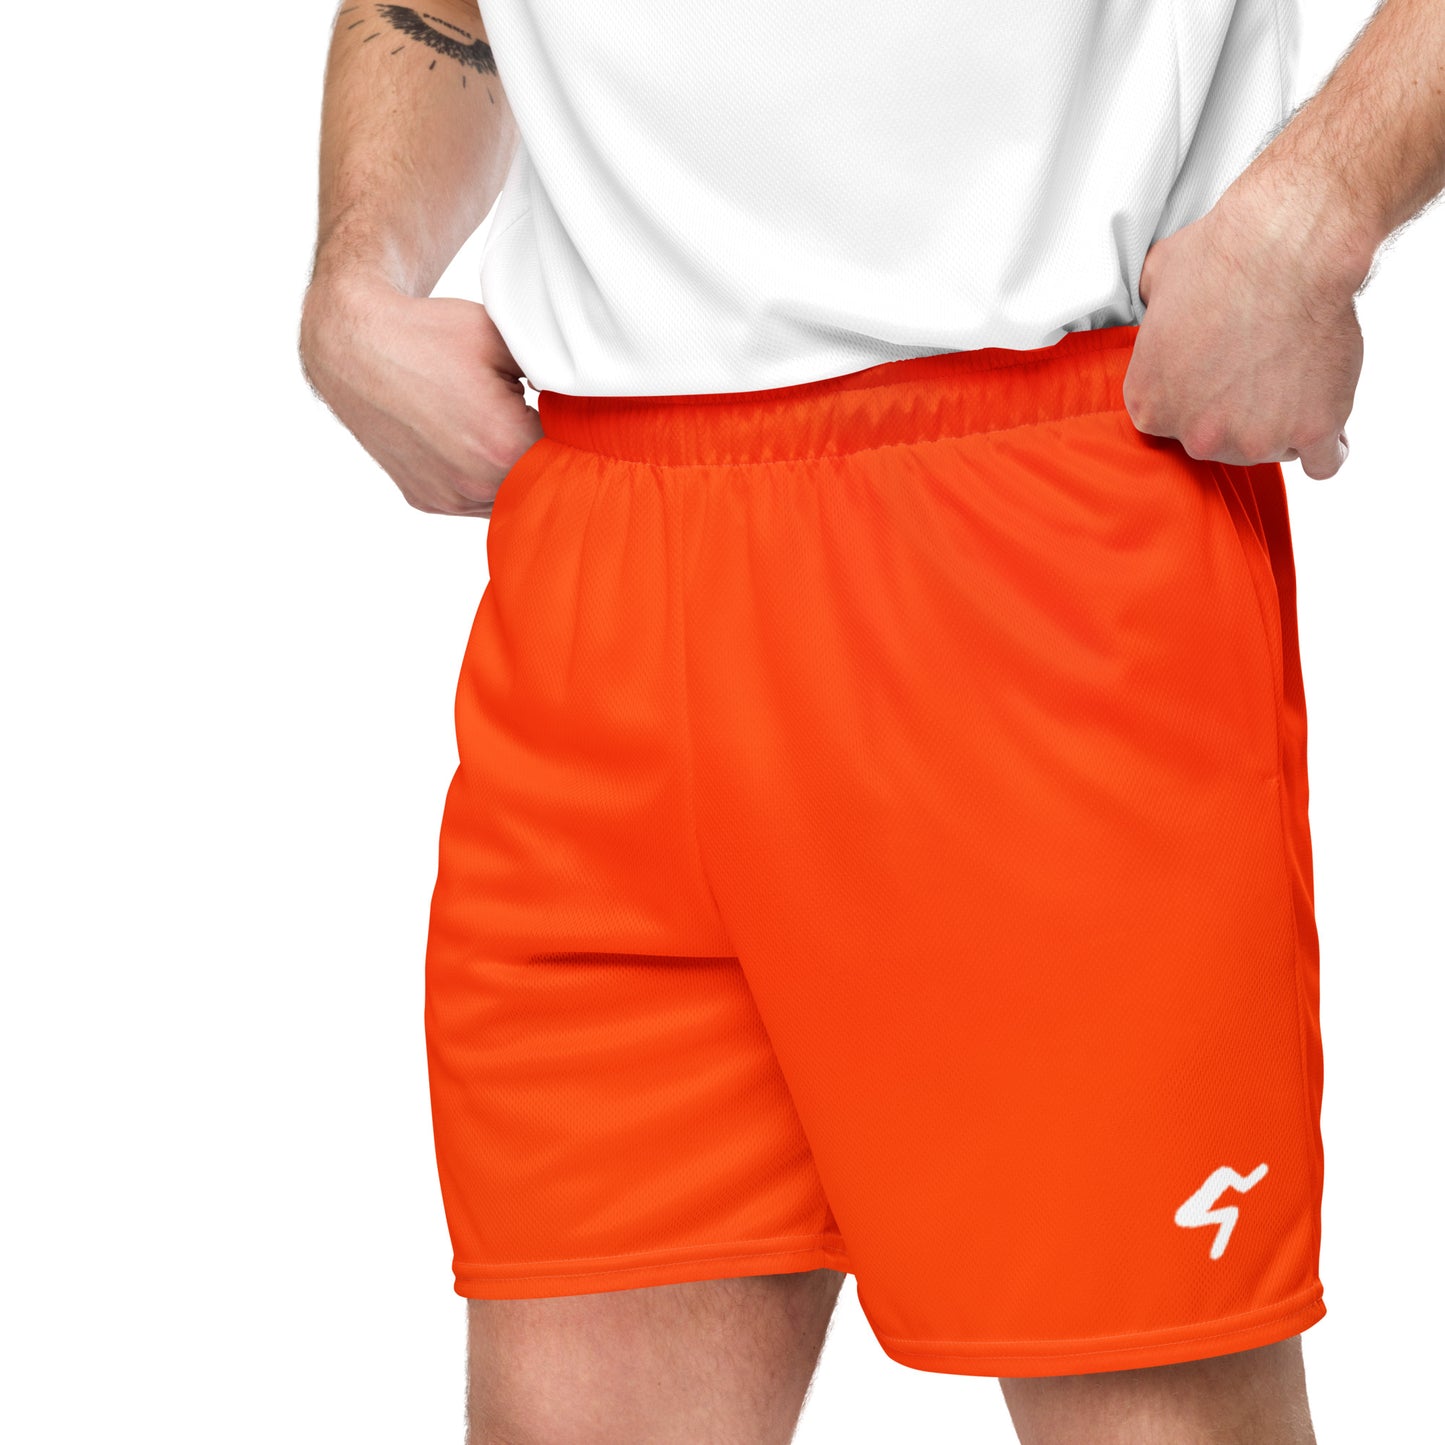 The GymbumUK Logo Blood Orange QuickDry Running Shorts